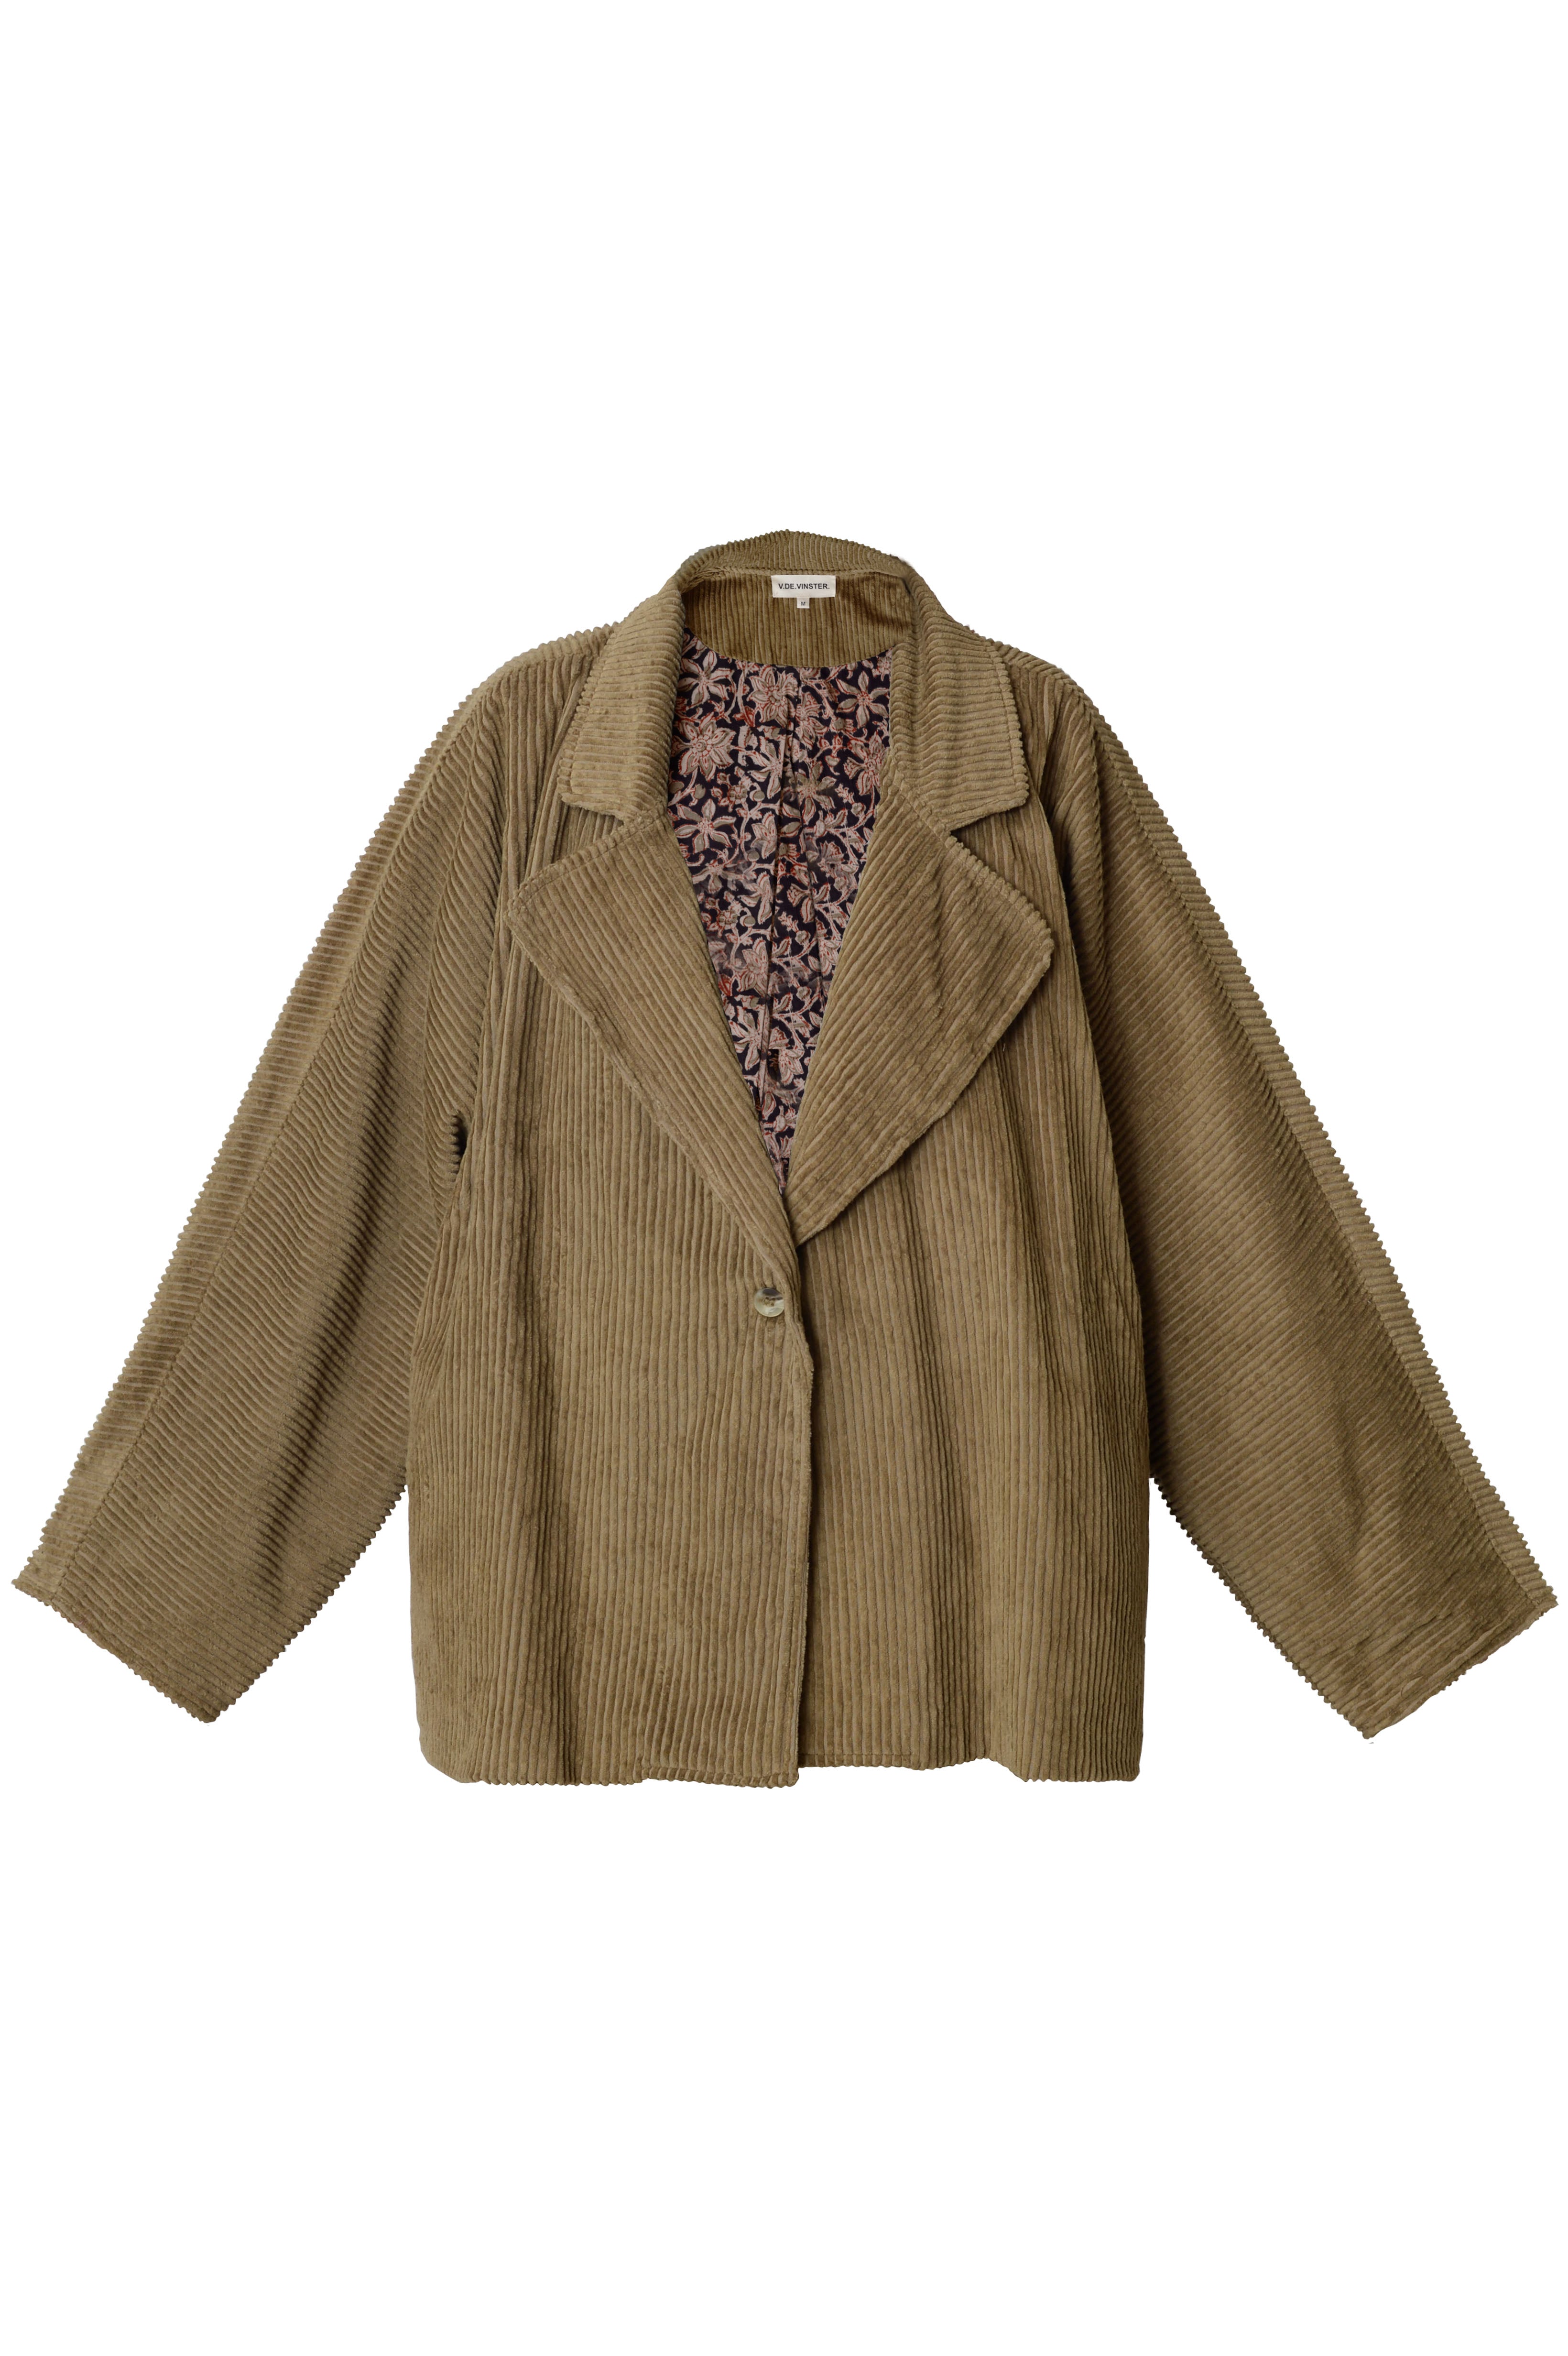 Barbara short brown corduroy jacket